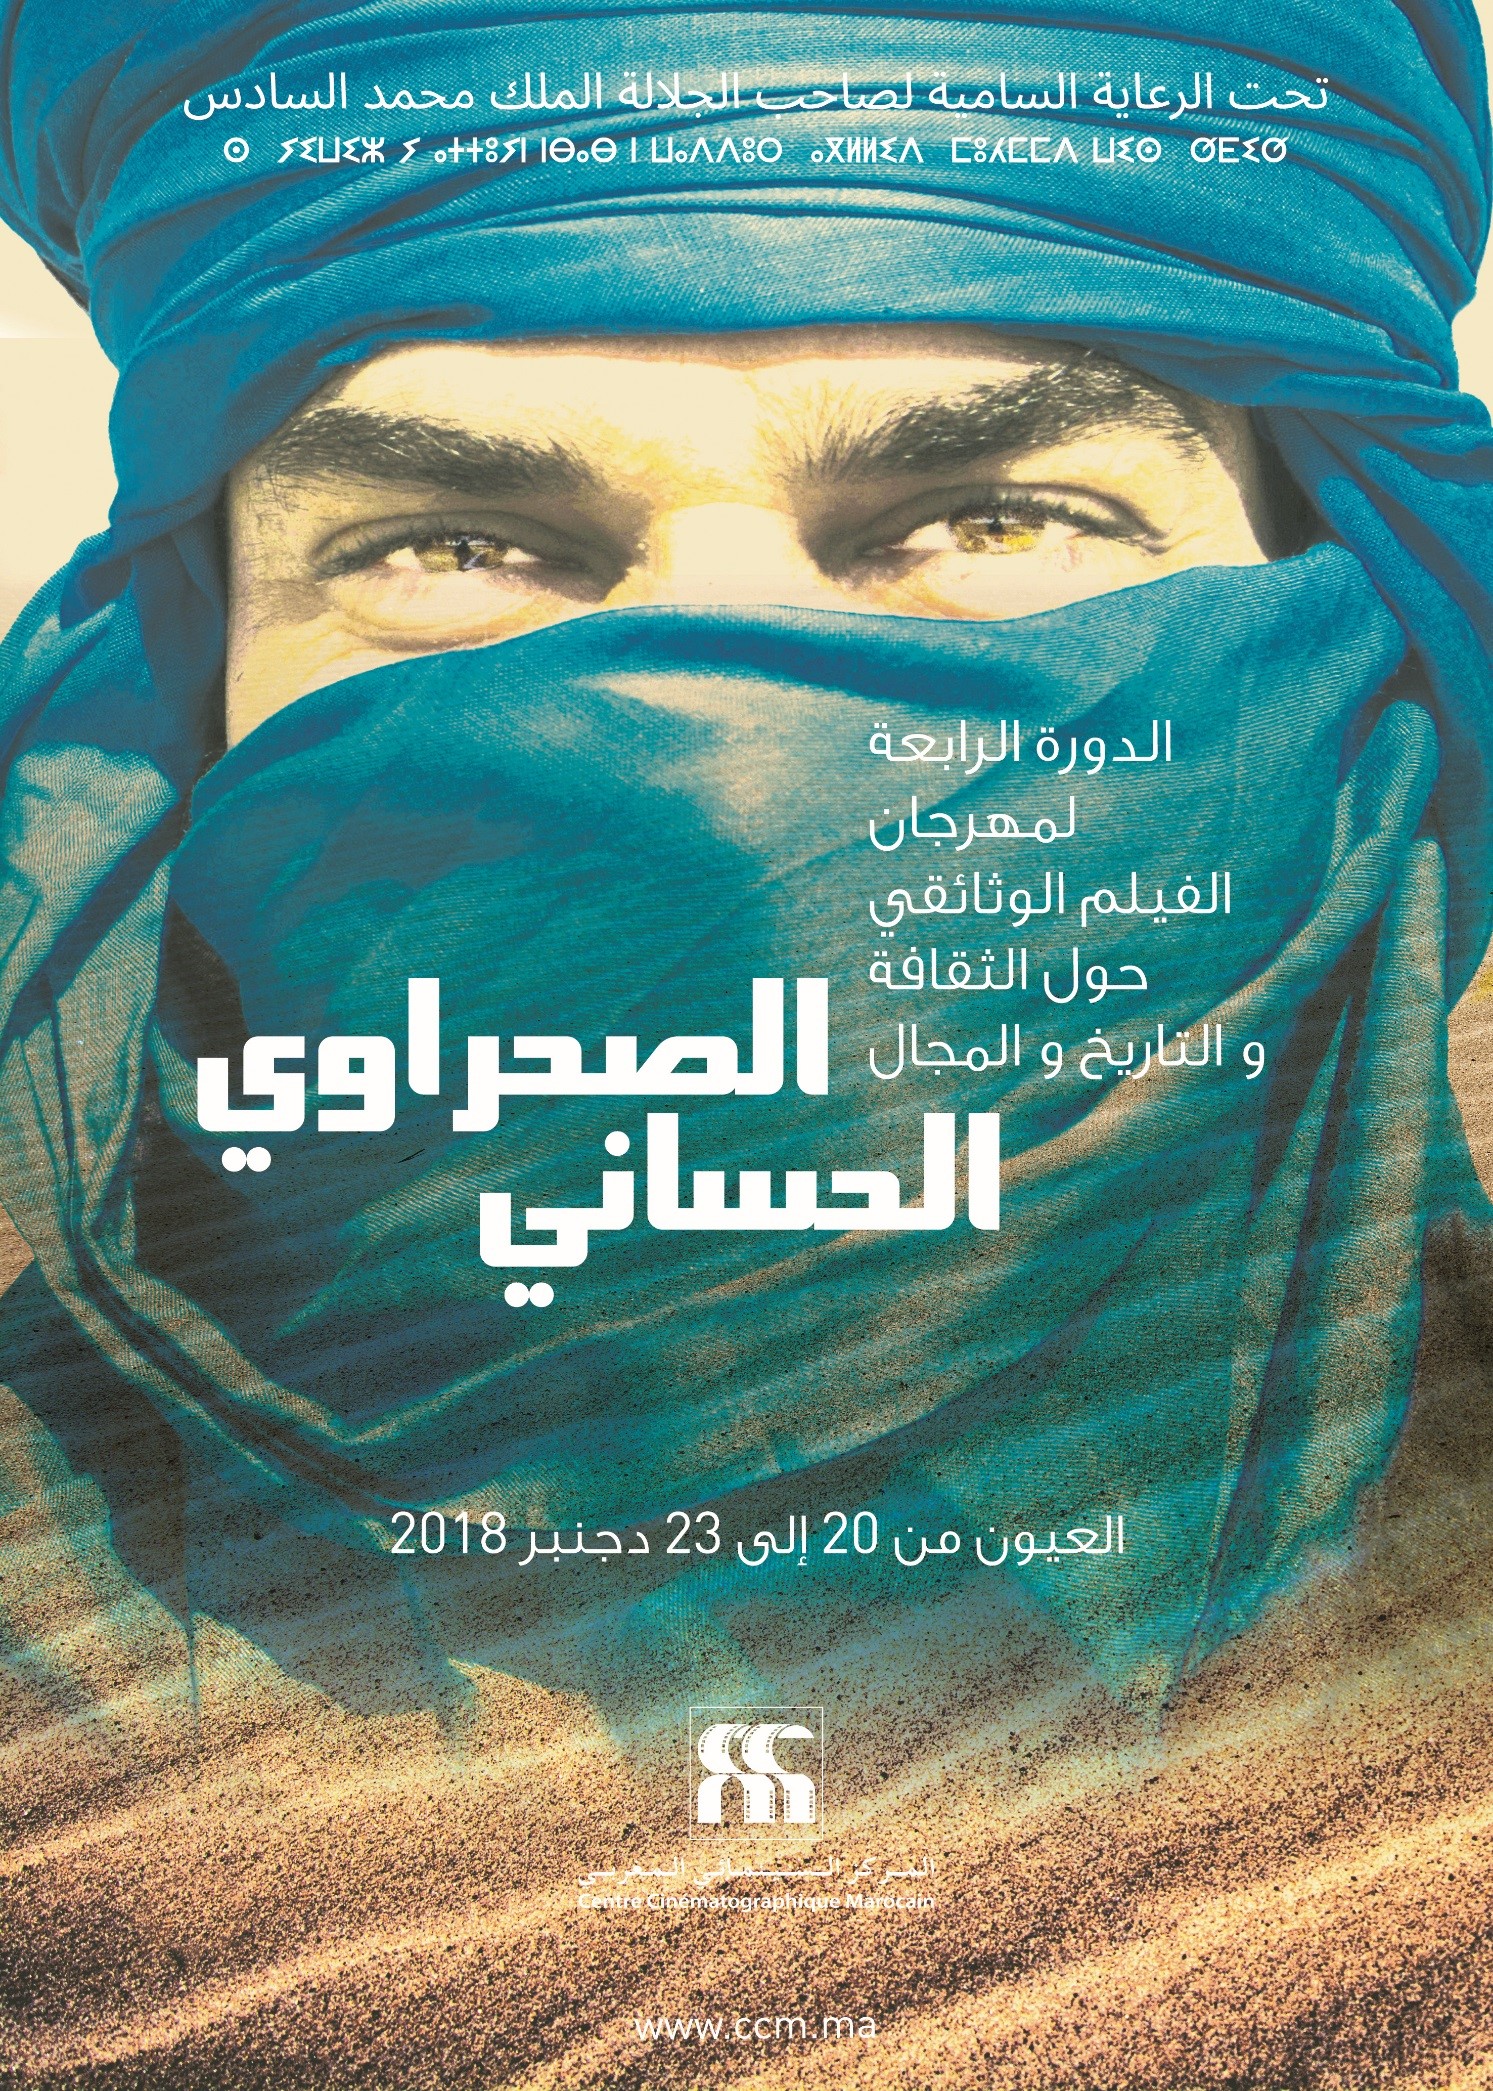 مهرجان الفيلم الوثائقي حول الثقافة والتاريخ والمجال الصحراوي الحساني